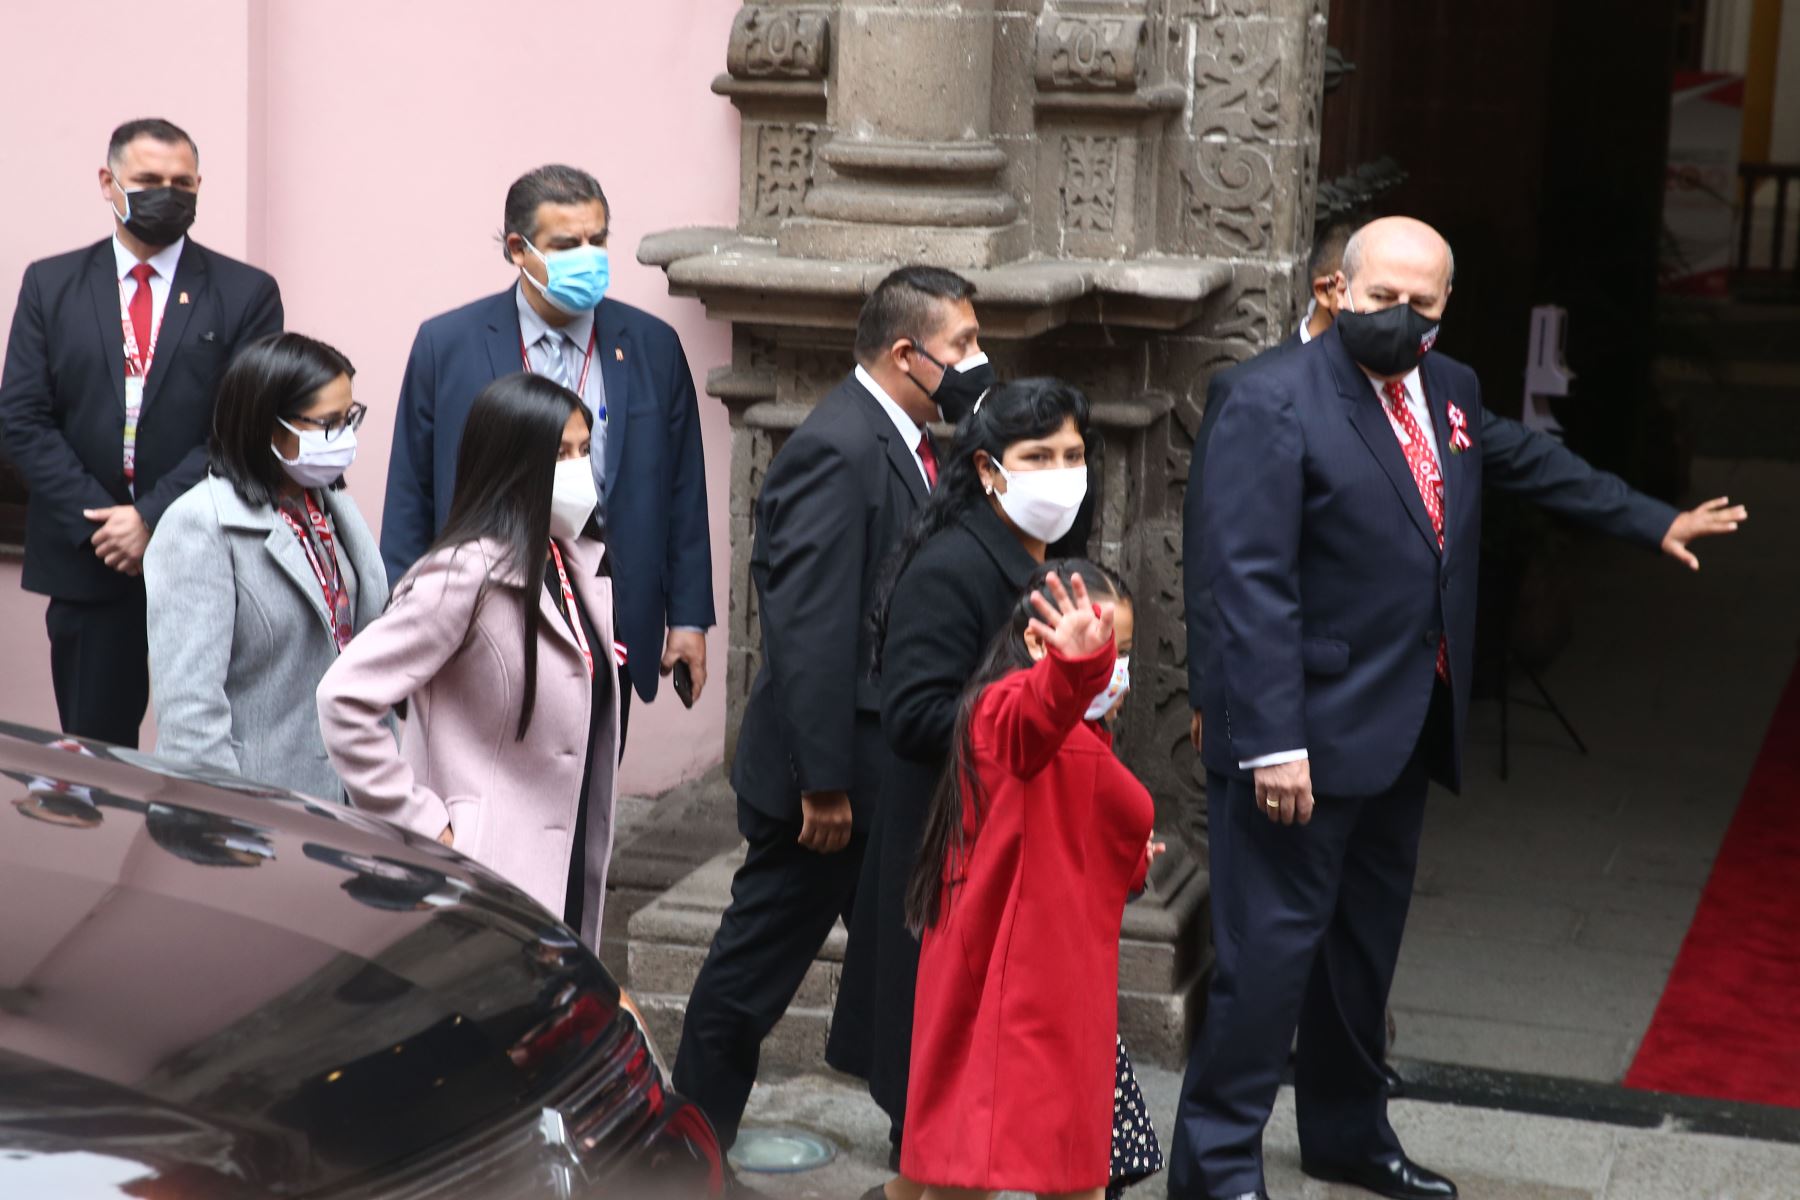 Familia del presidente Pedro Castillo asiste a ceremonia de toma de mando | Noticias | Agencia Peruana de Noticias Andina